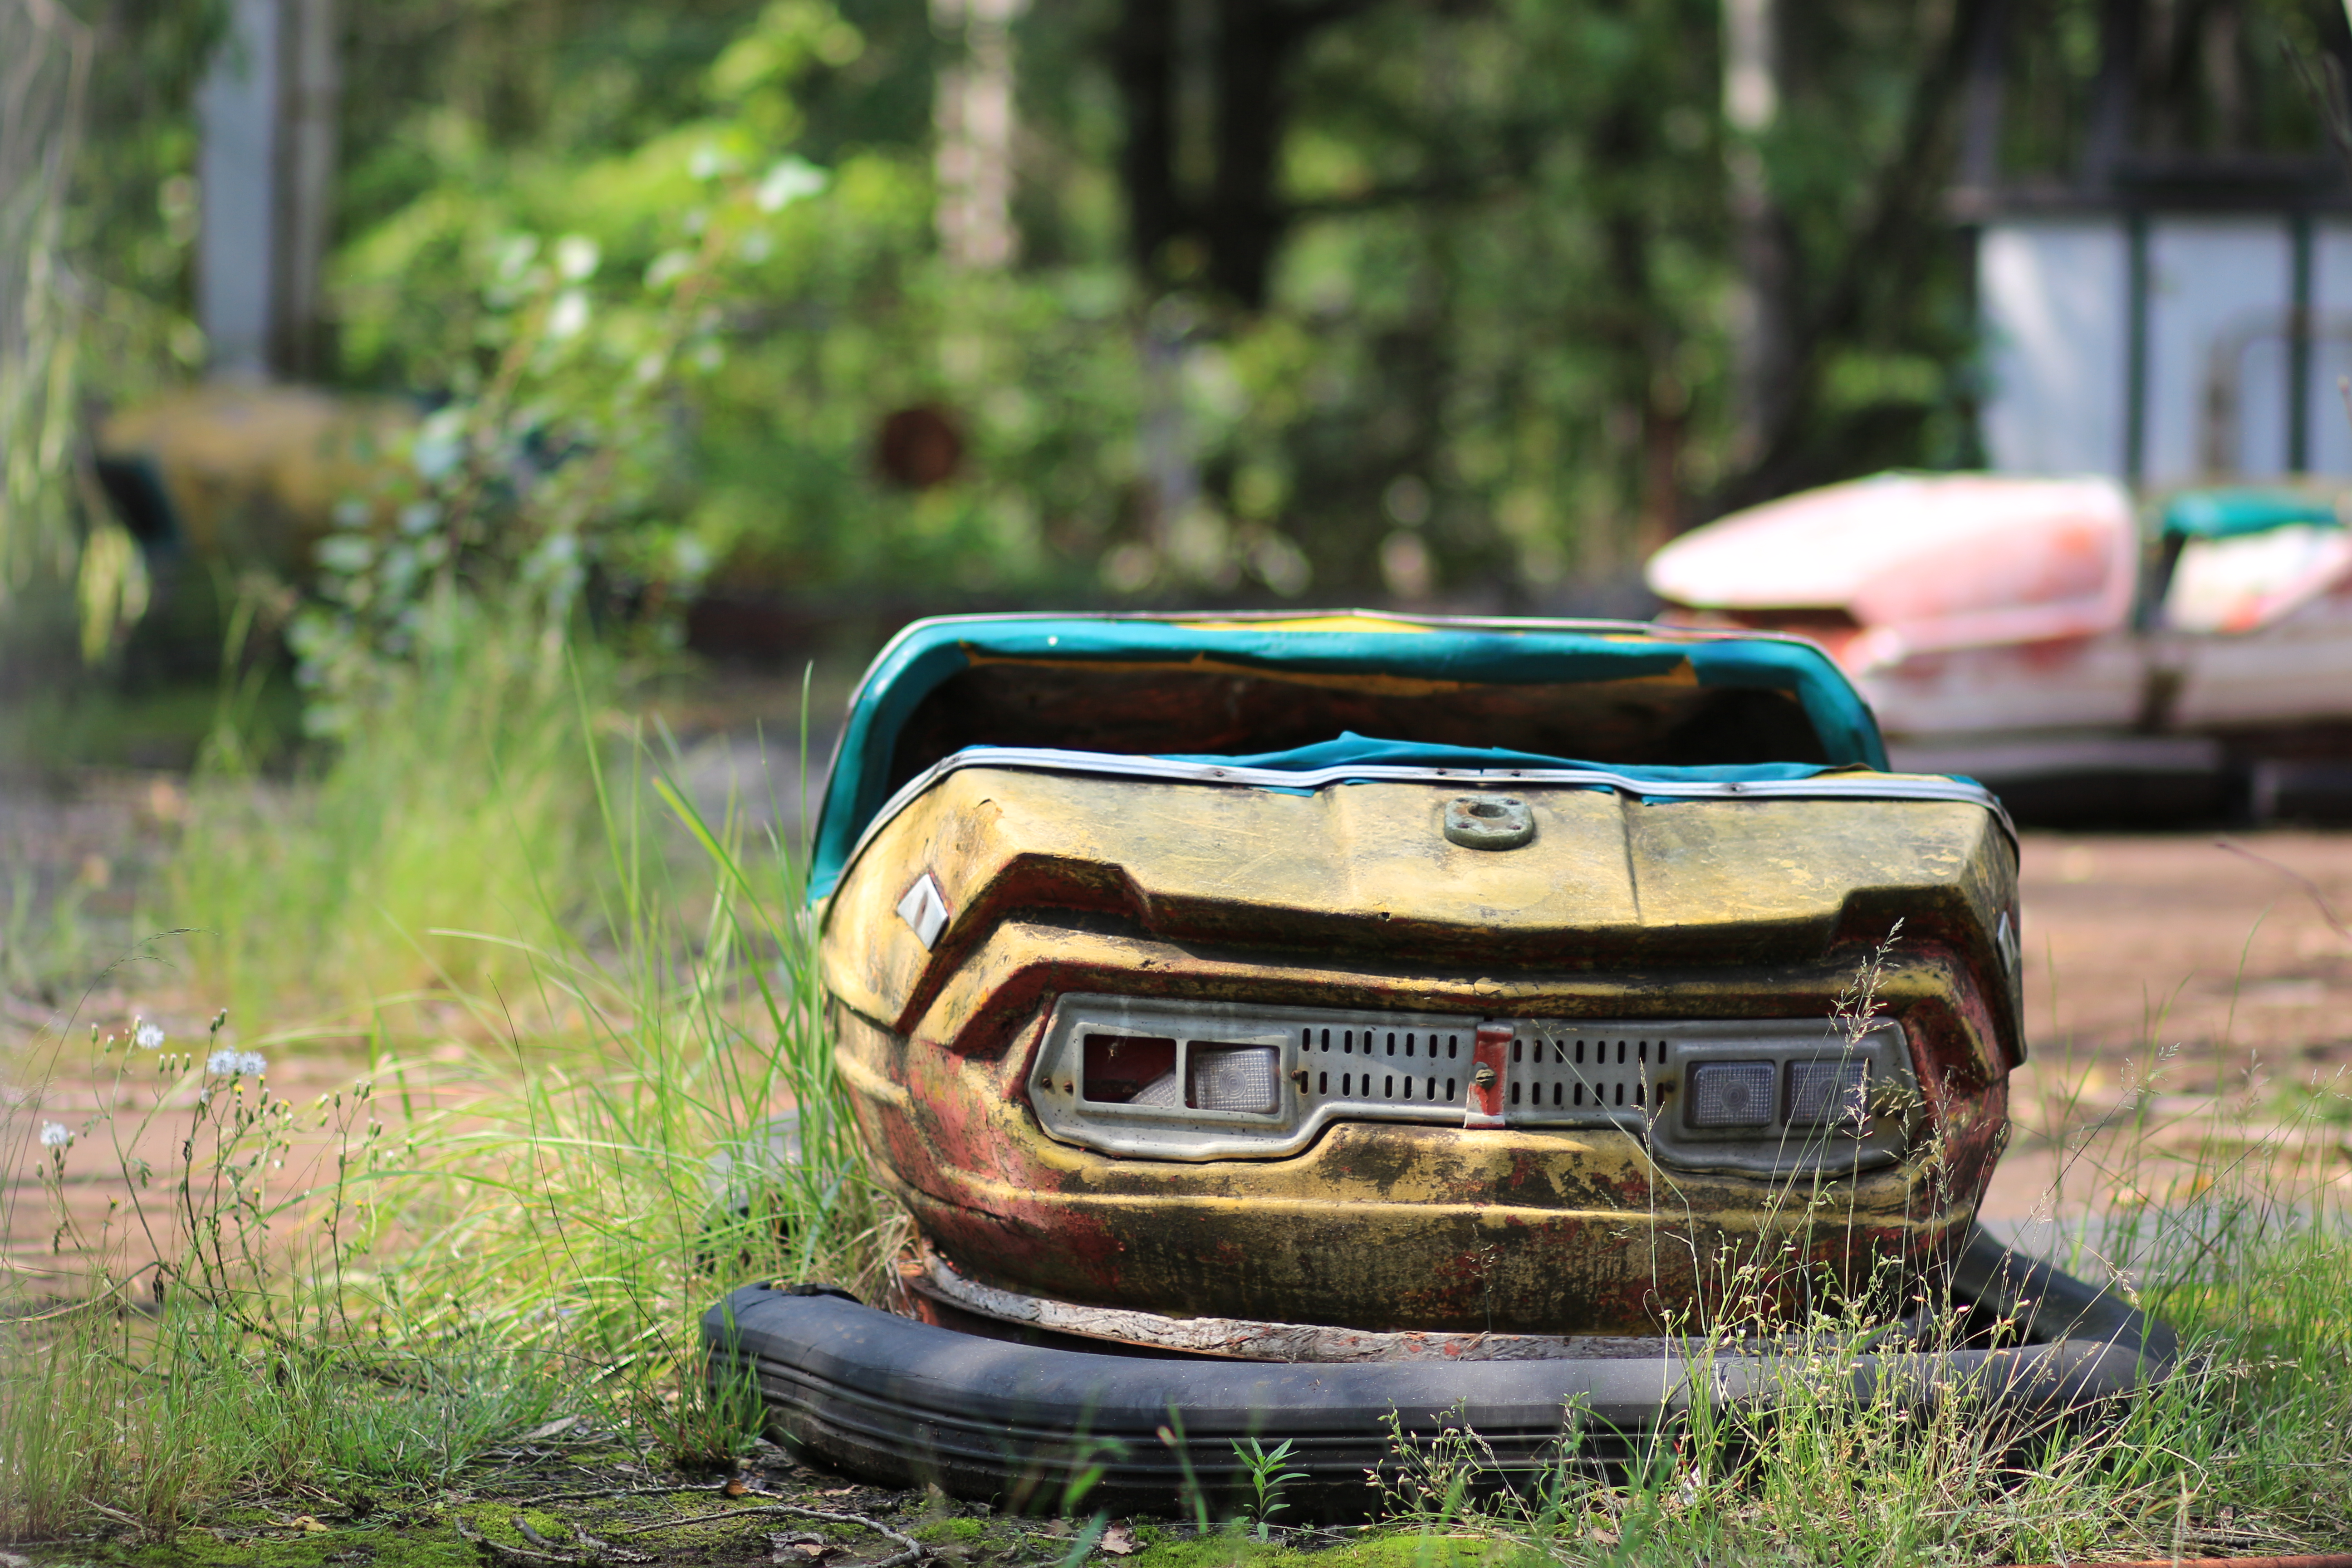 Abandoned bumper car